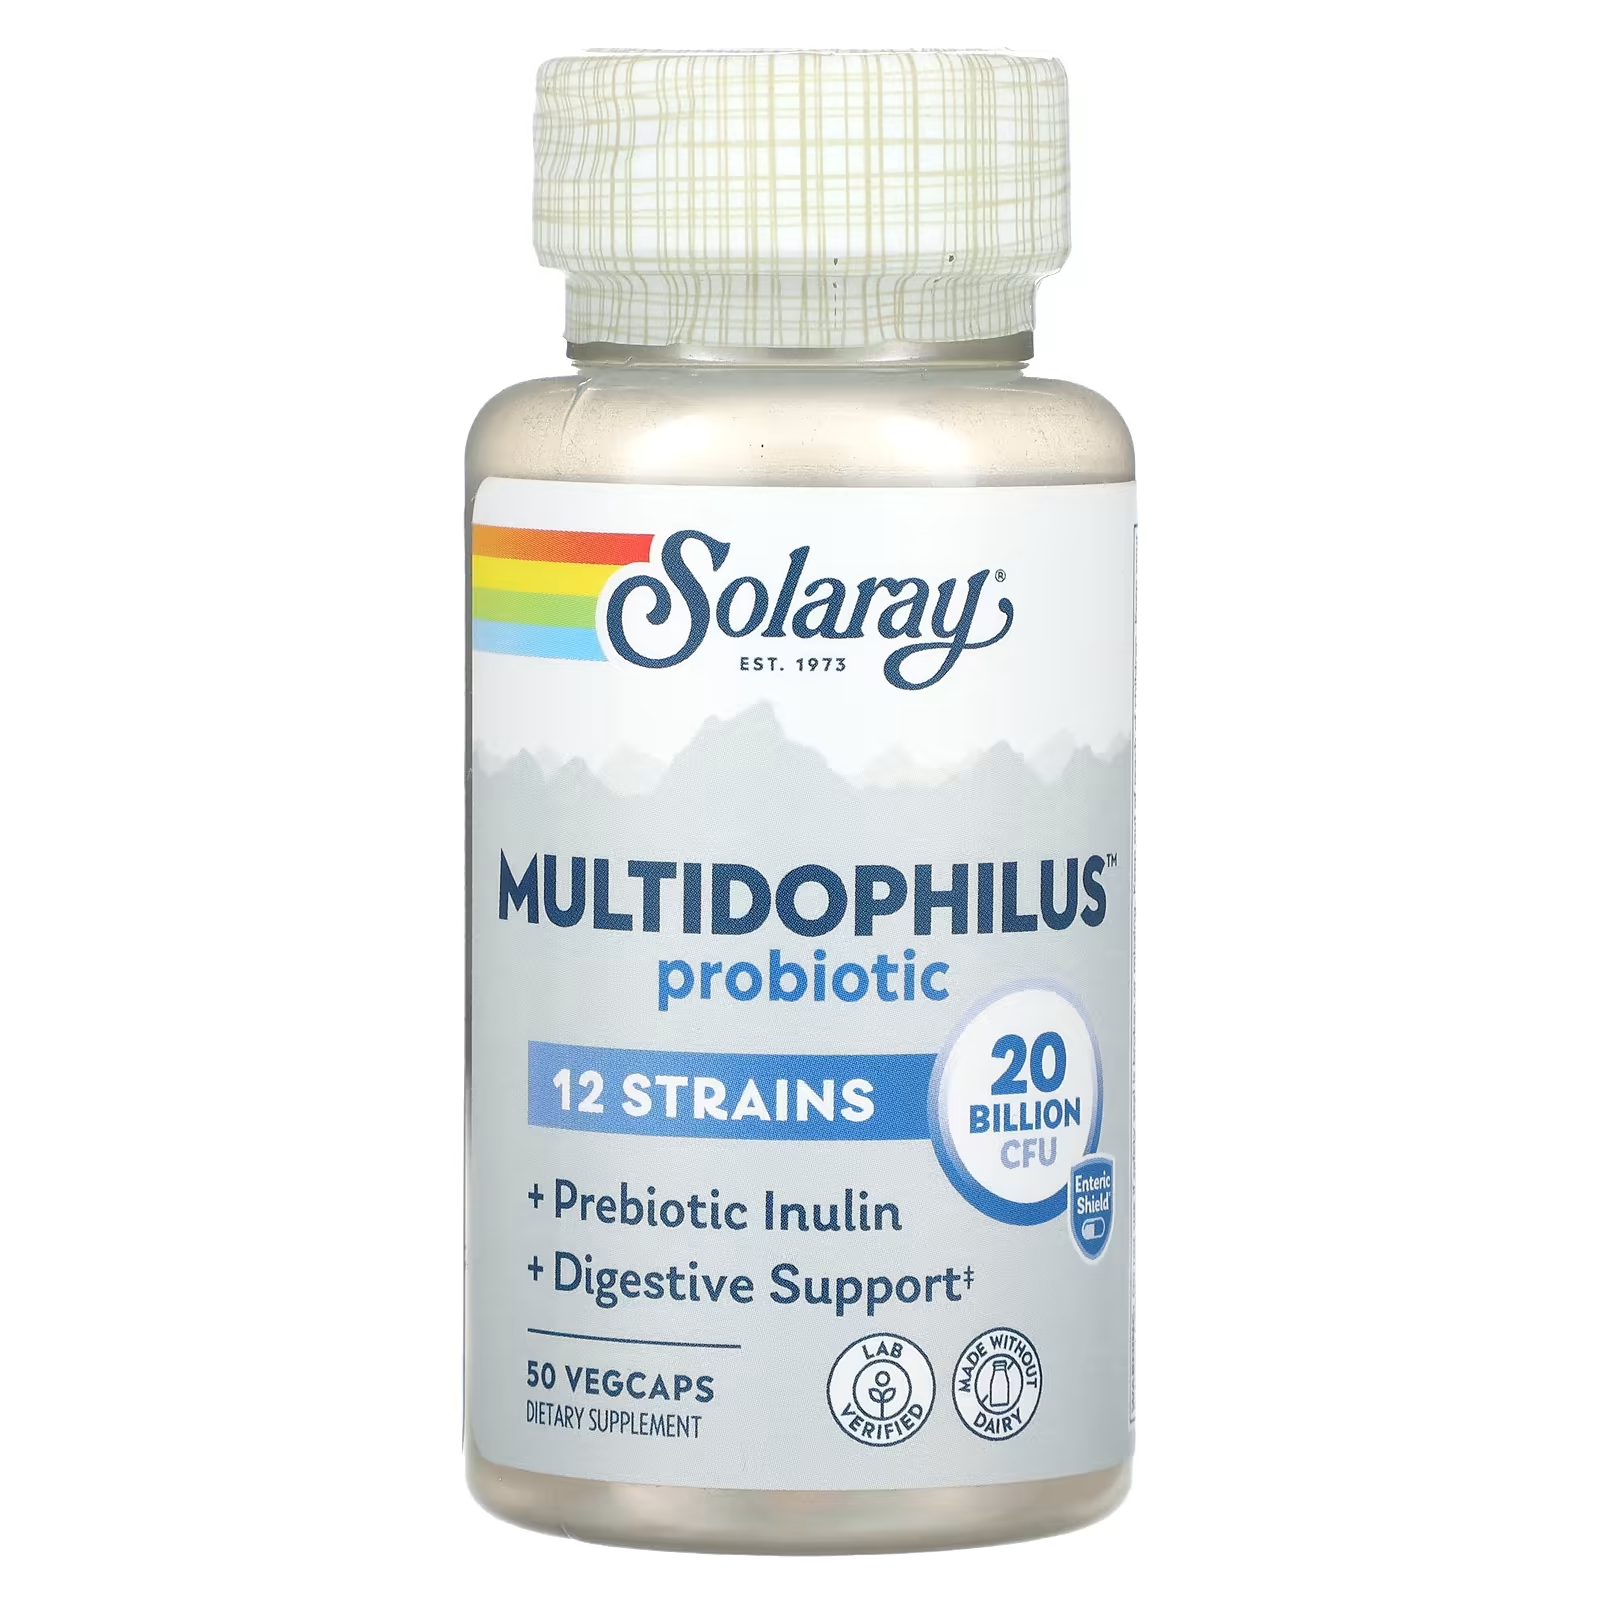 Пробиотик Solaray Multidophilus, 20 миллиардов КОЕ, 50 растительных капсул пробиотик solaray multidophilus 20 миллиардов кое 50 растительных капсул